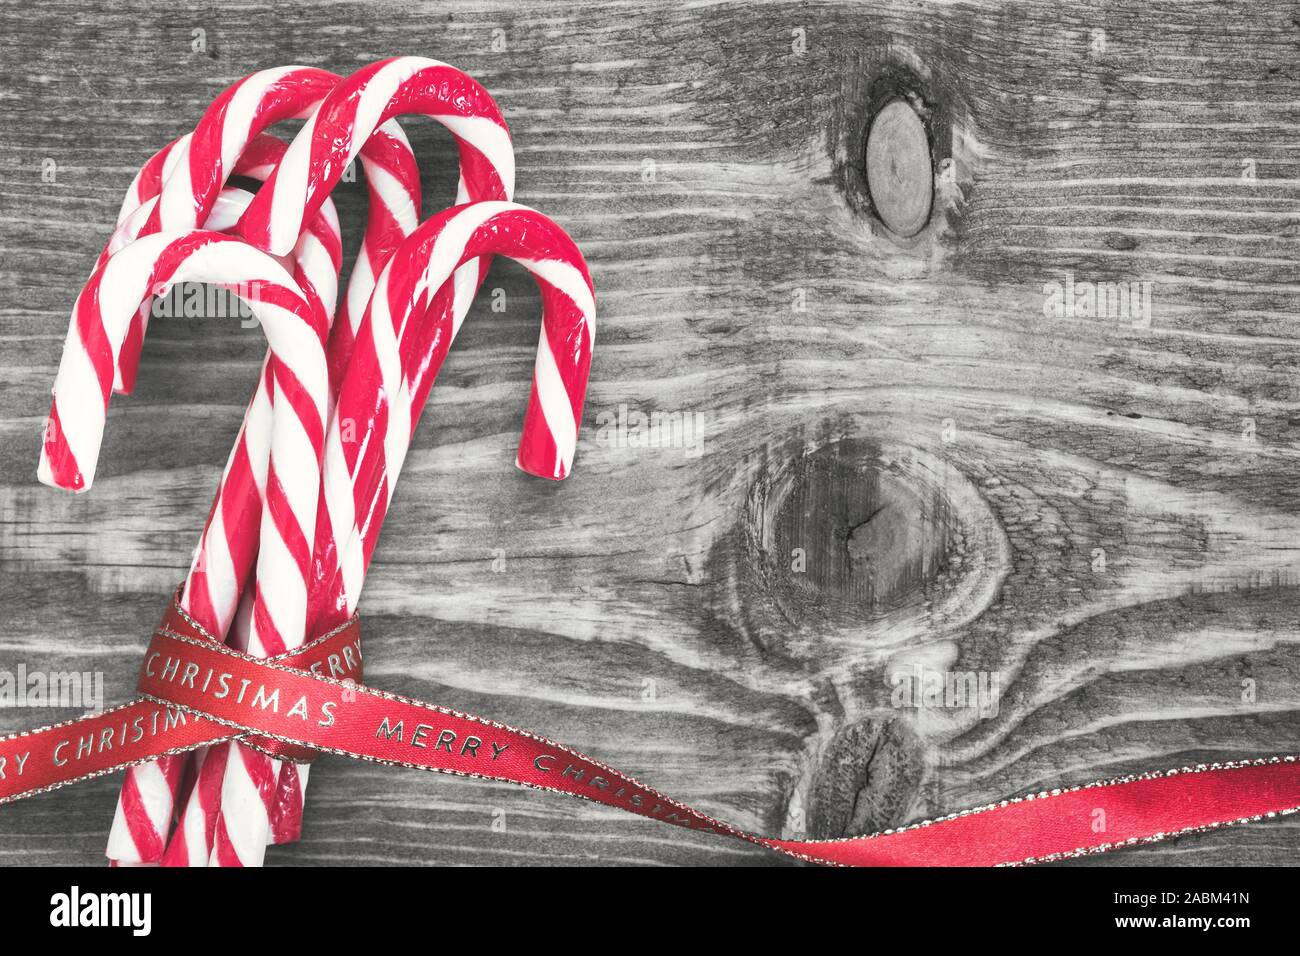 Des cannes de bonbon enveloppé de ruban de Noël rouge sur fond noir et blanc. Vue de dessus avec l'exemplaire de l'espace sur le côté droit. Banque D'Images